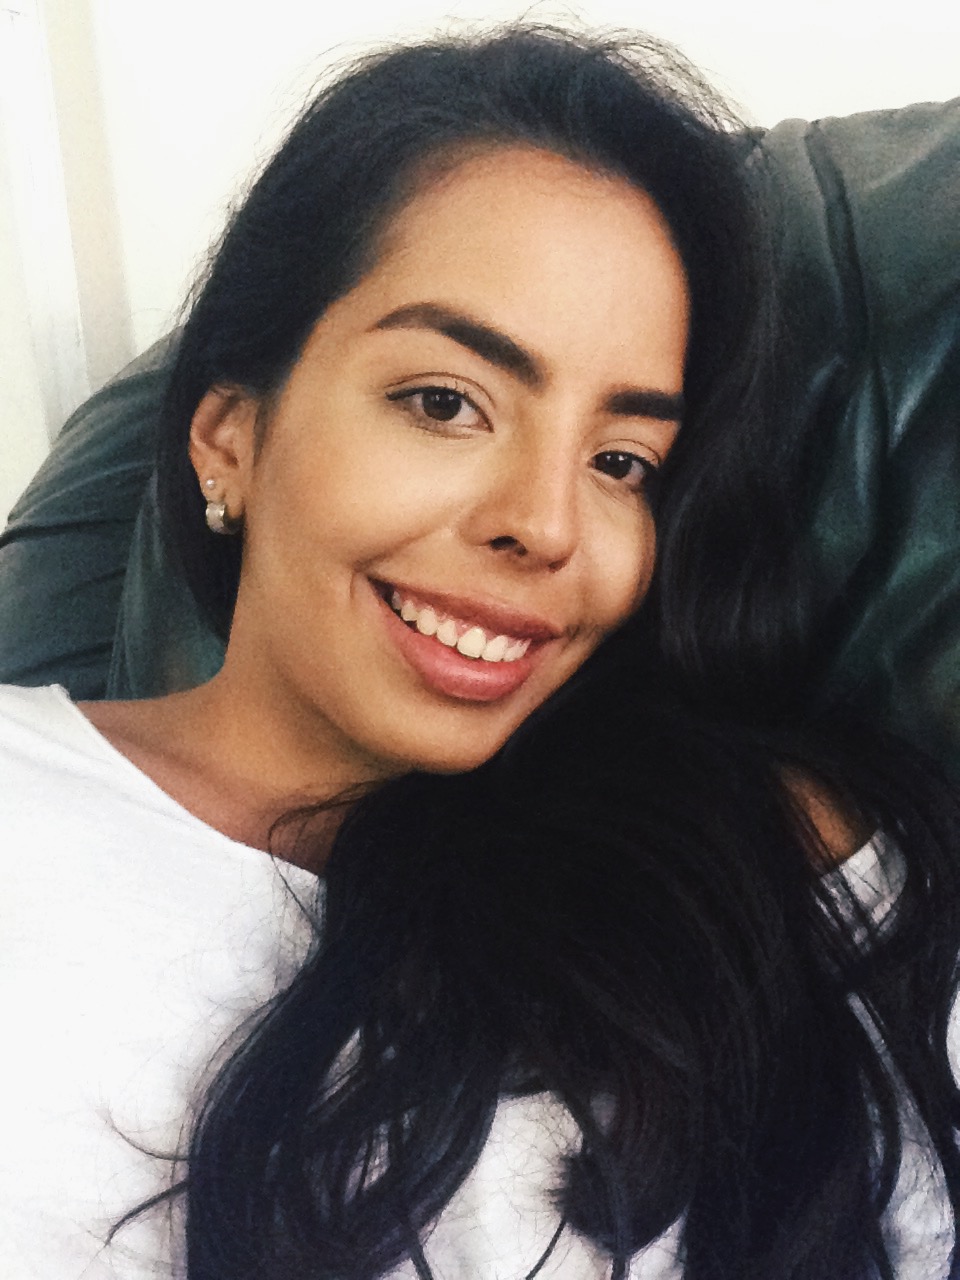 Aydemar from Venezuela